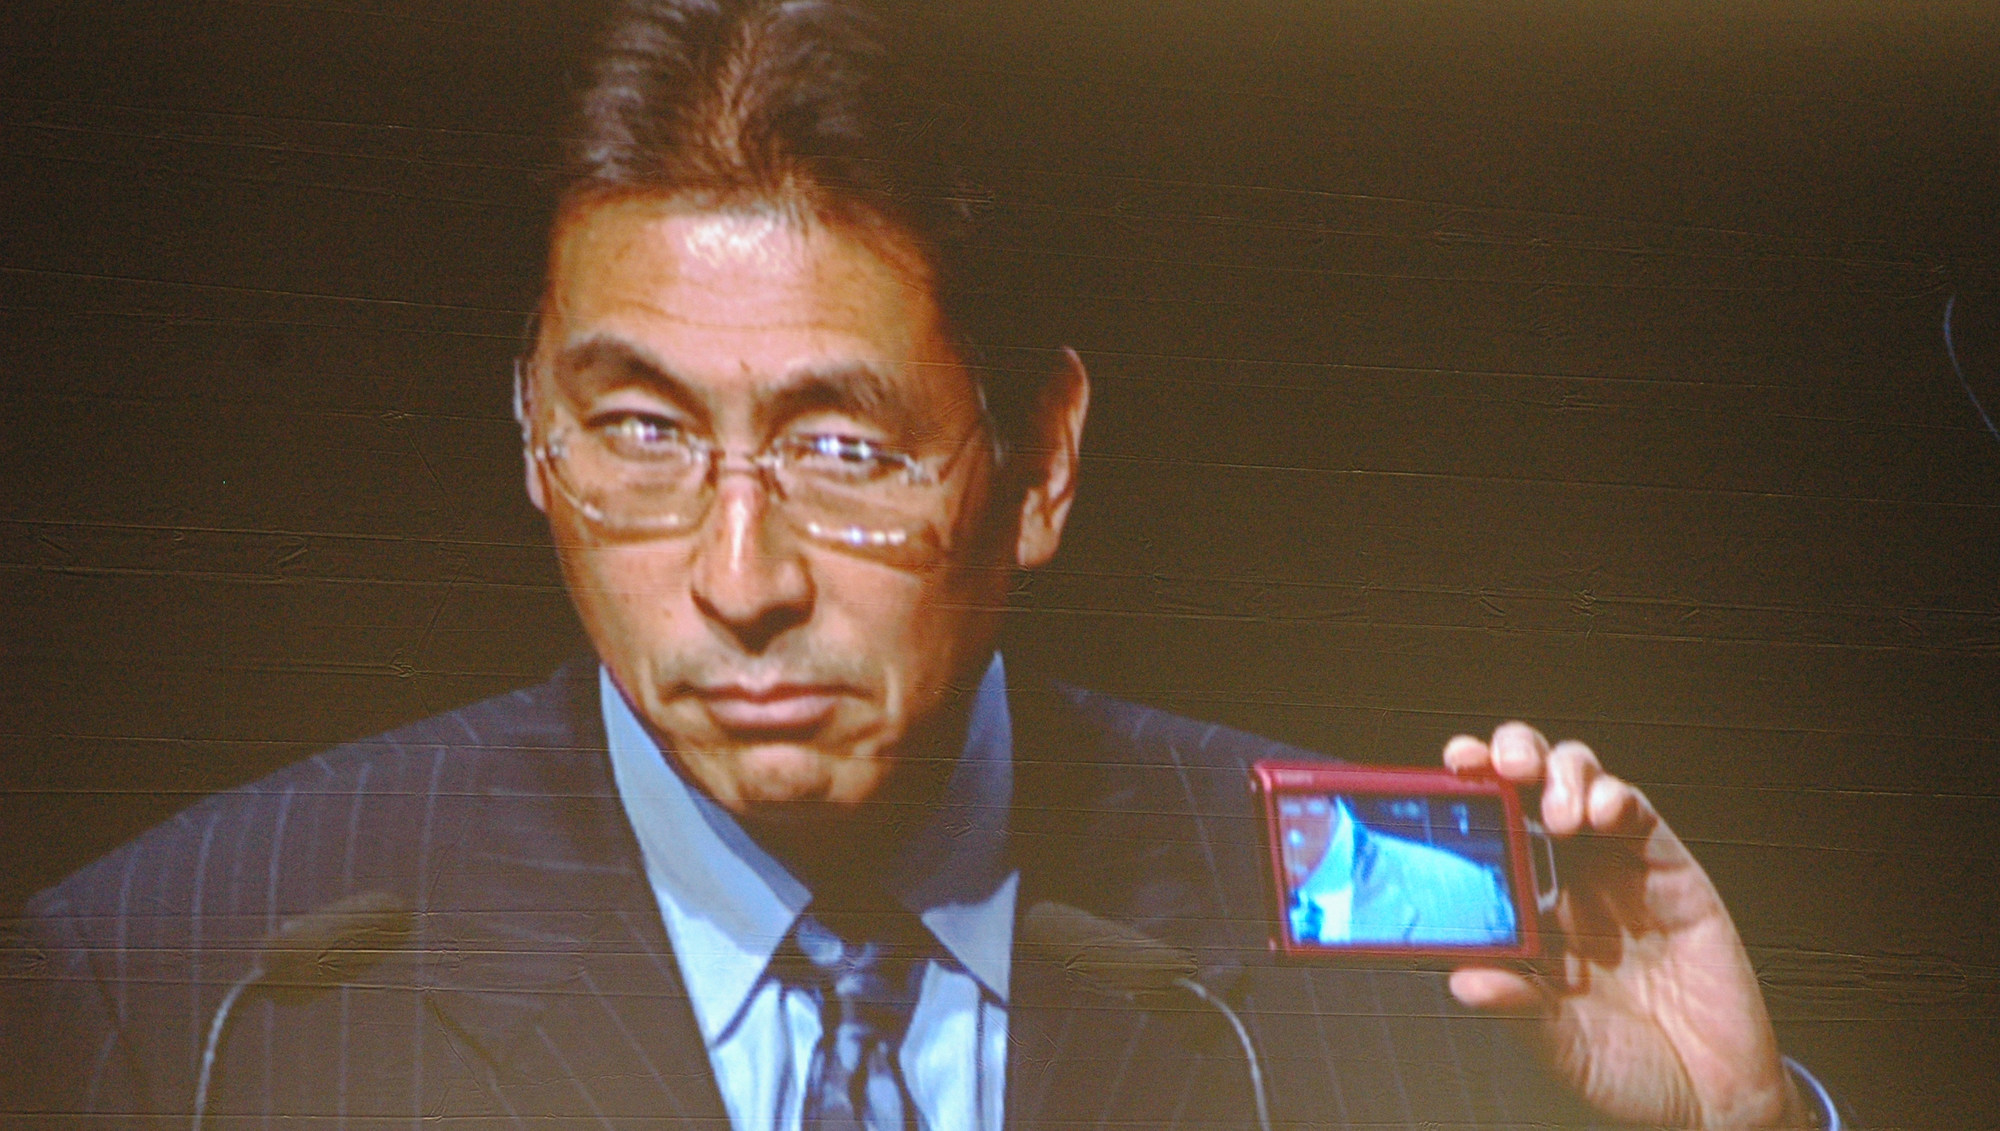 Sonys Europa-sjef Fujio Nishada viser prøver tappert å smile mens han viser fram T200, det ene av Sonys to nye smilekameraer.